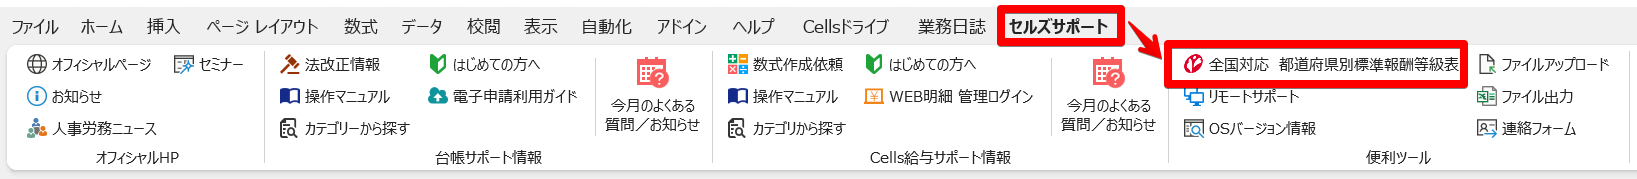 Cells__.xls__-________-_Excel_2023-02-21_15.25.51.png